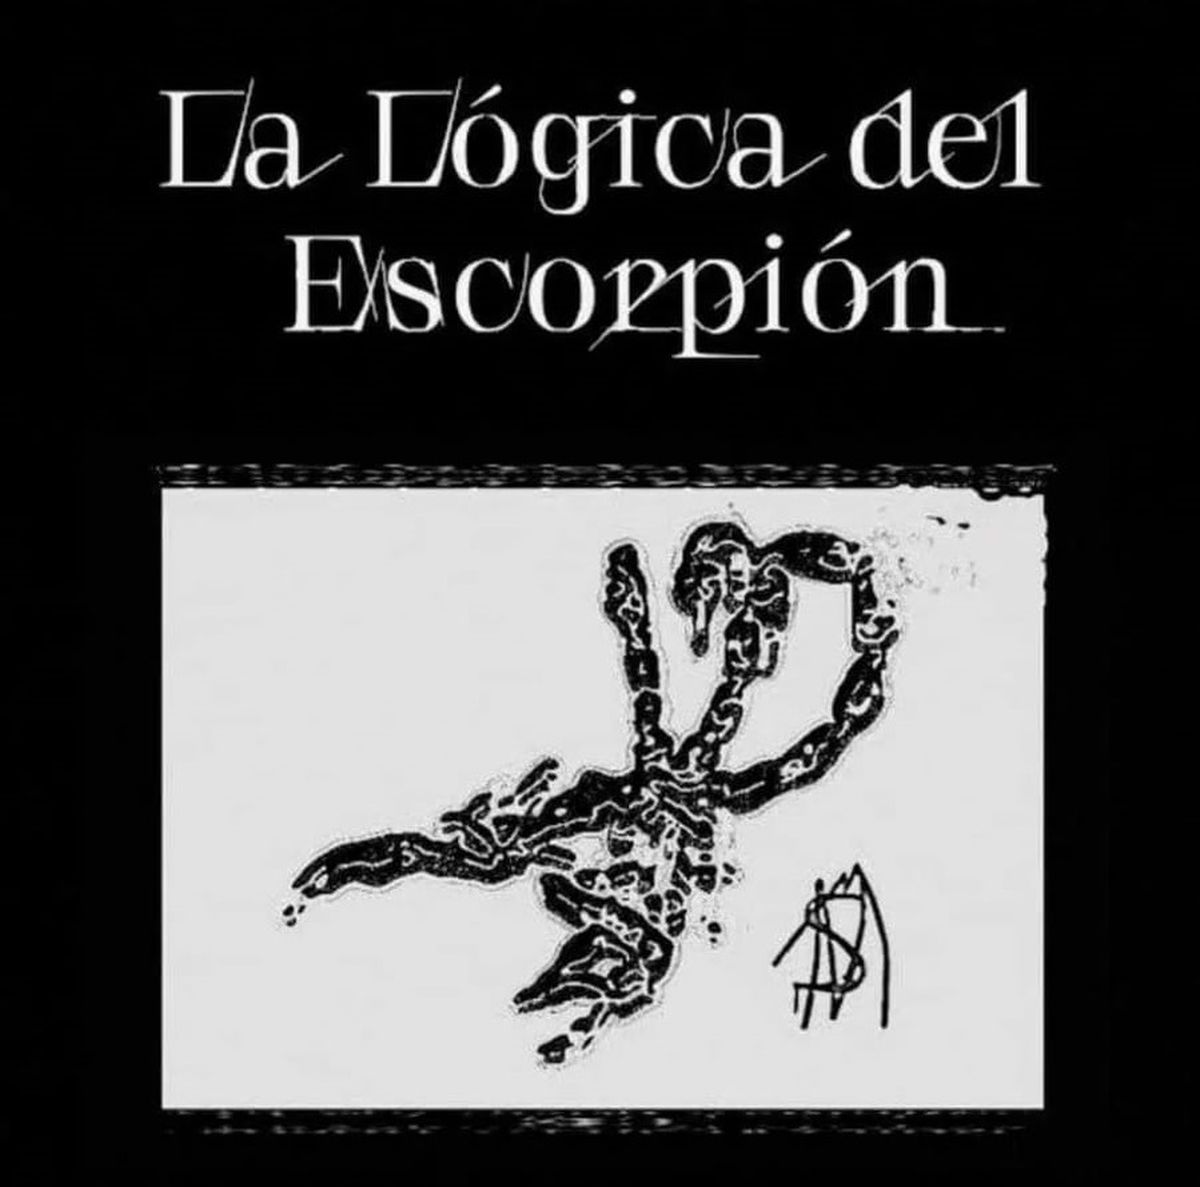 la-logica-del-escorpion-nuevo-disco-charly-garcia